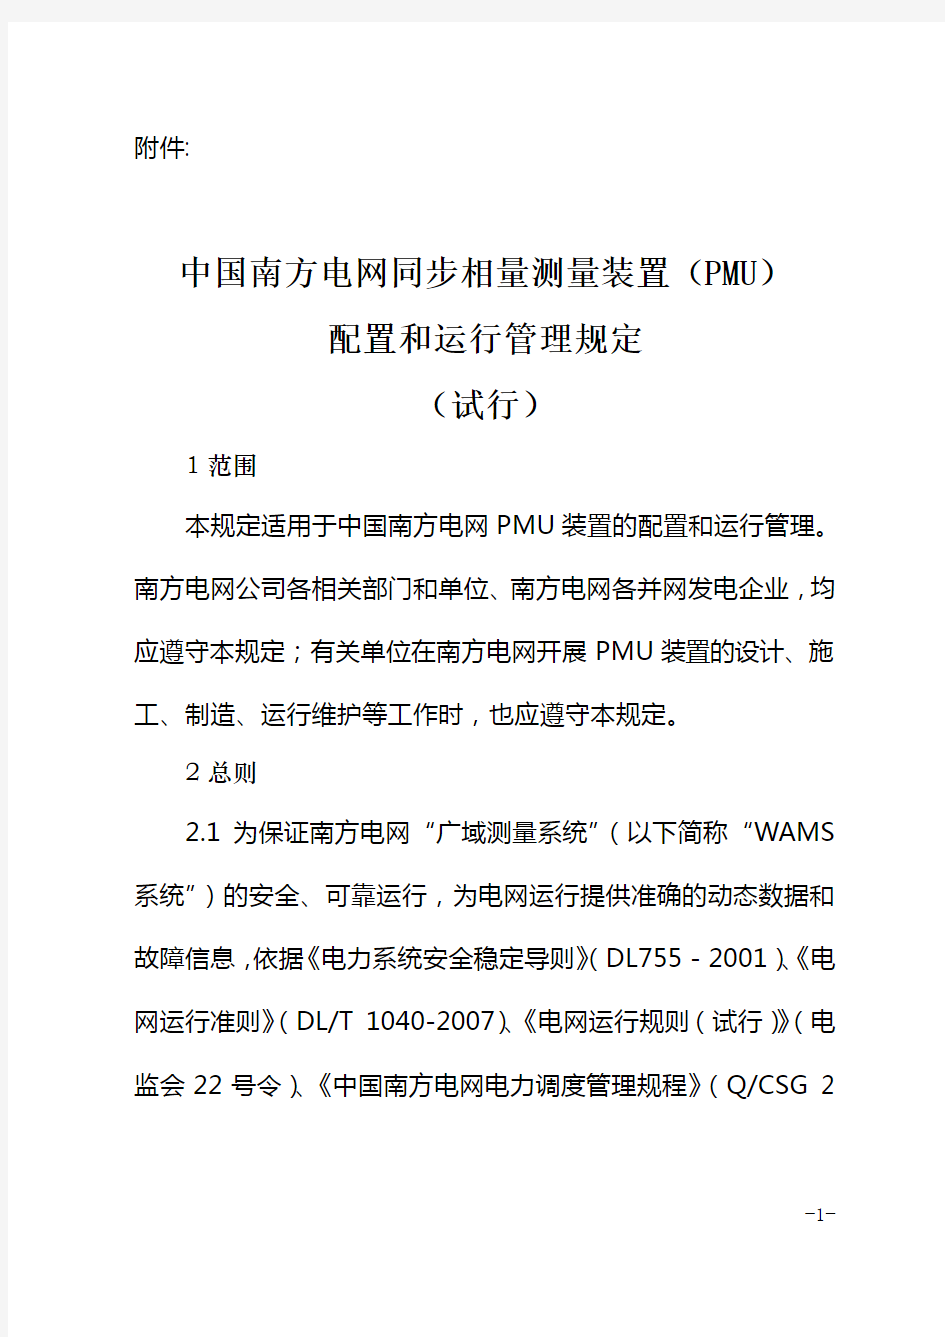 《中国南方电网同步相量测量装置(PMU)配置和运行管理规定(试行)》.